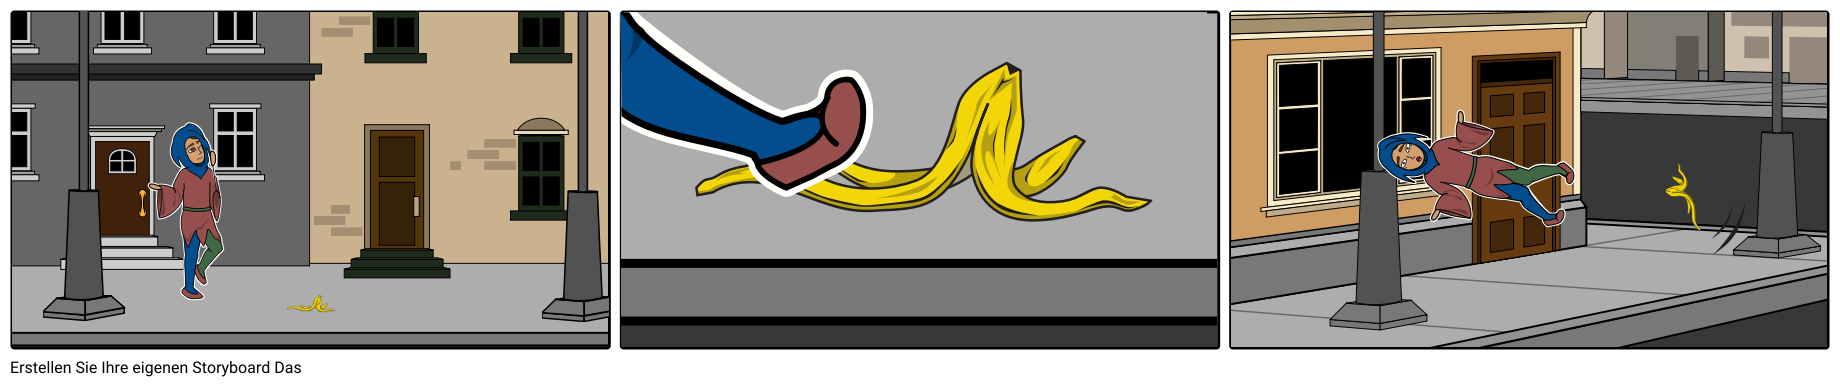 Jester rutscht auf Bananenschale